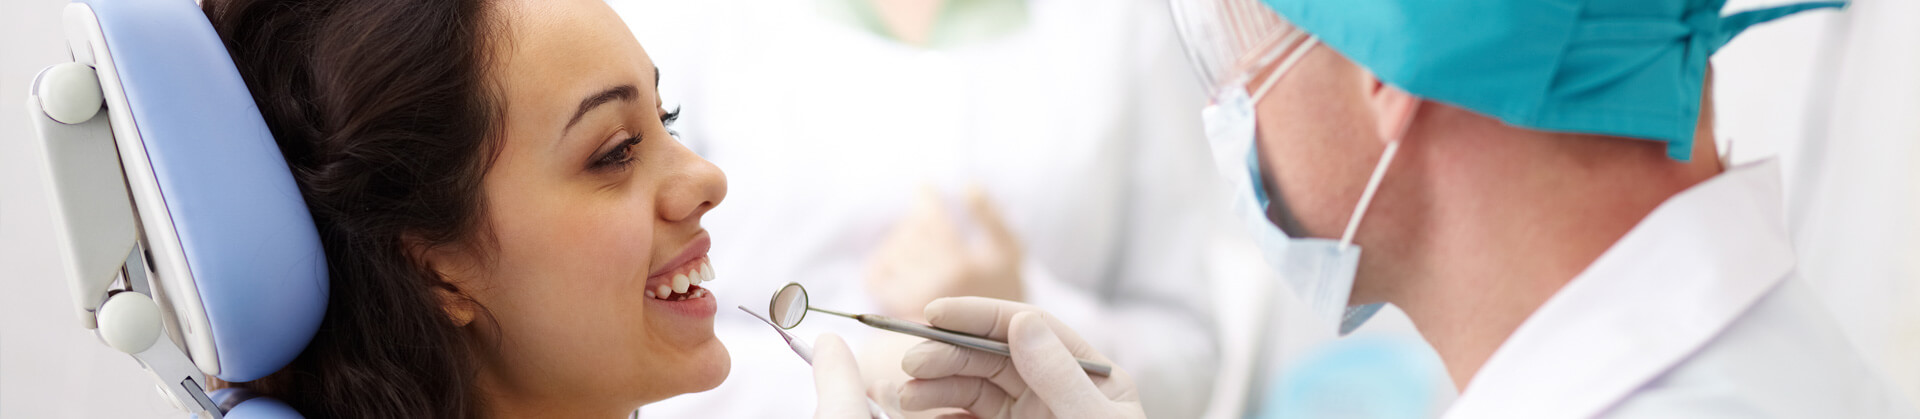 Closeup of a patient receiving dental treatment